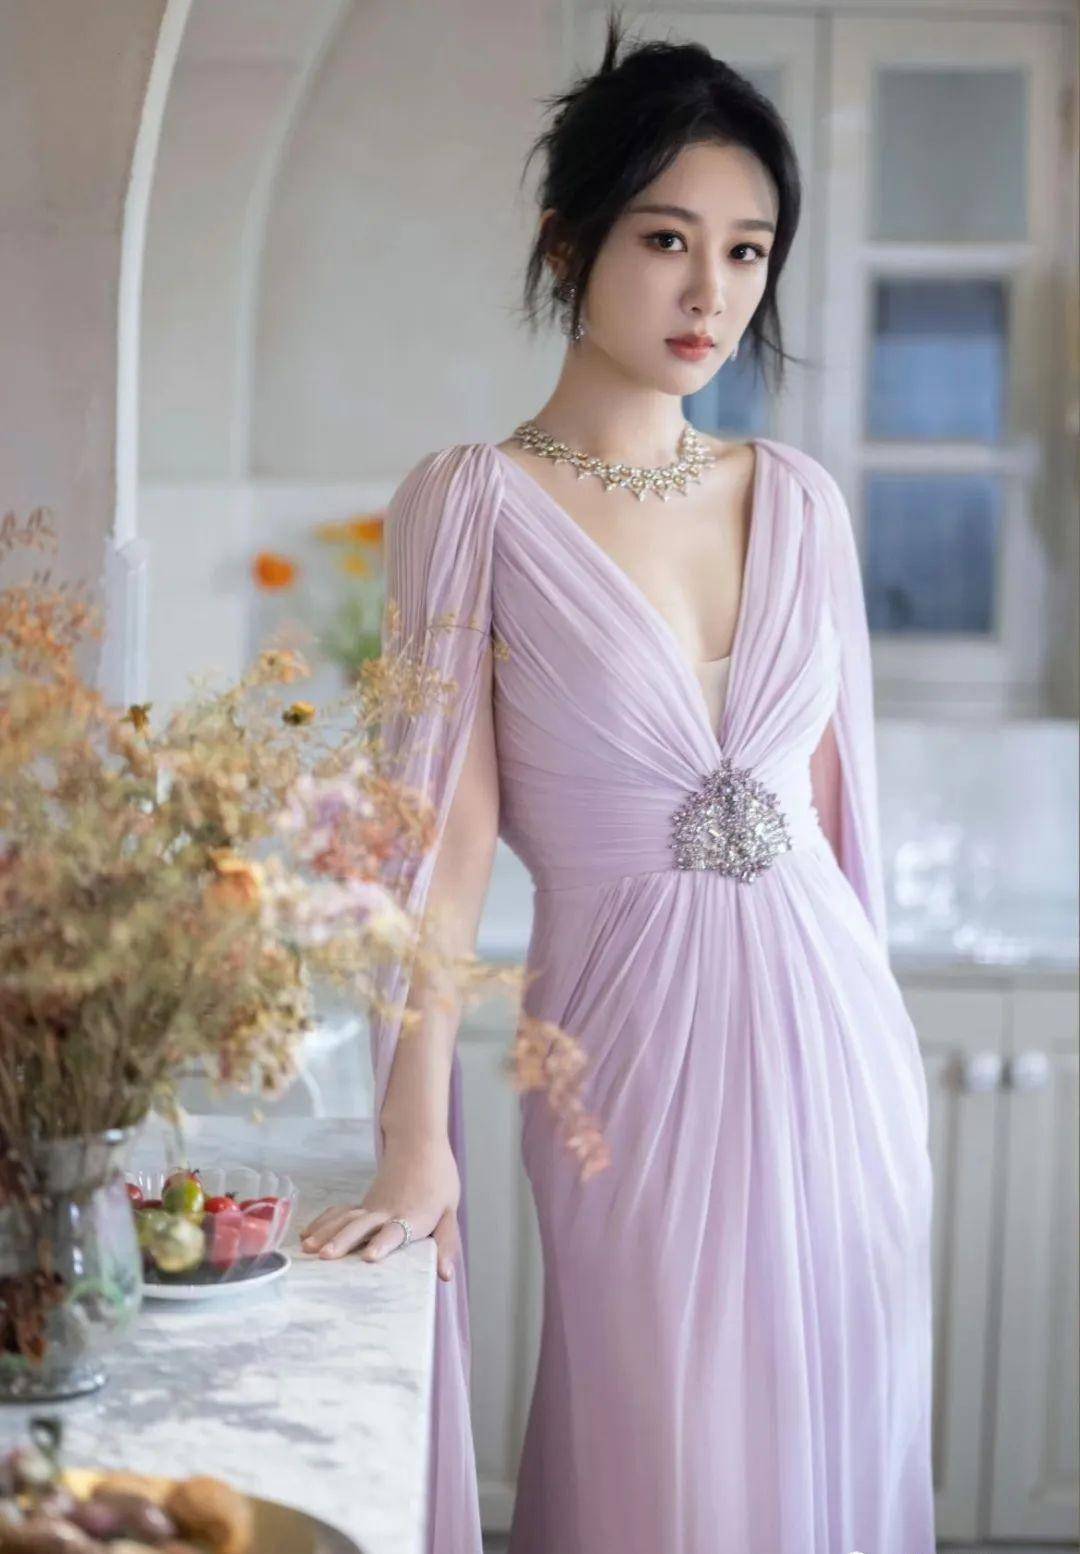 杨紫的身材不被重视,穿着深v薄纱连衣裙秀出事业线,非常漂亮